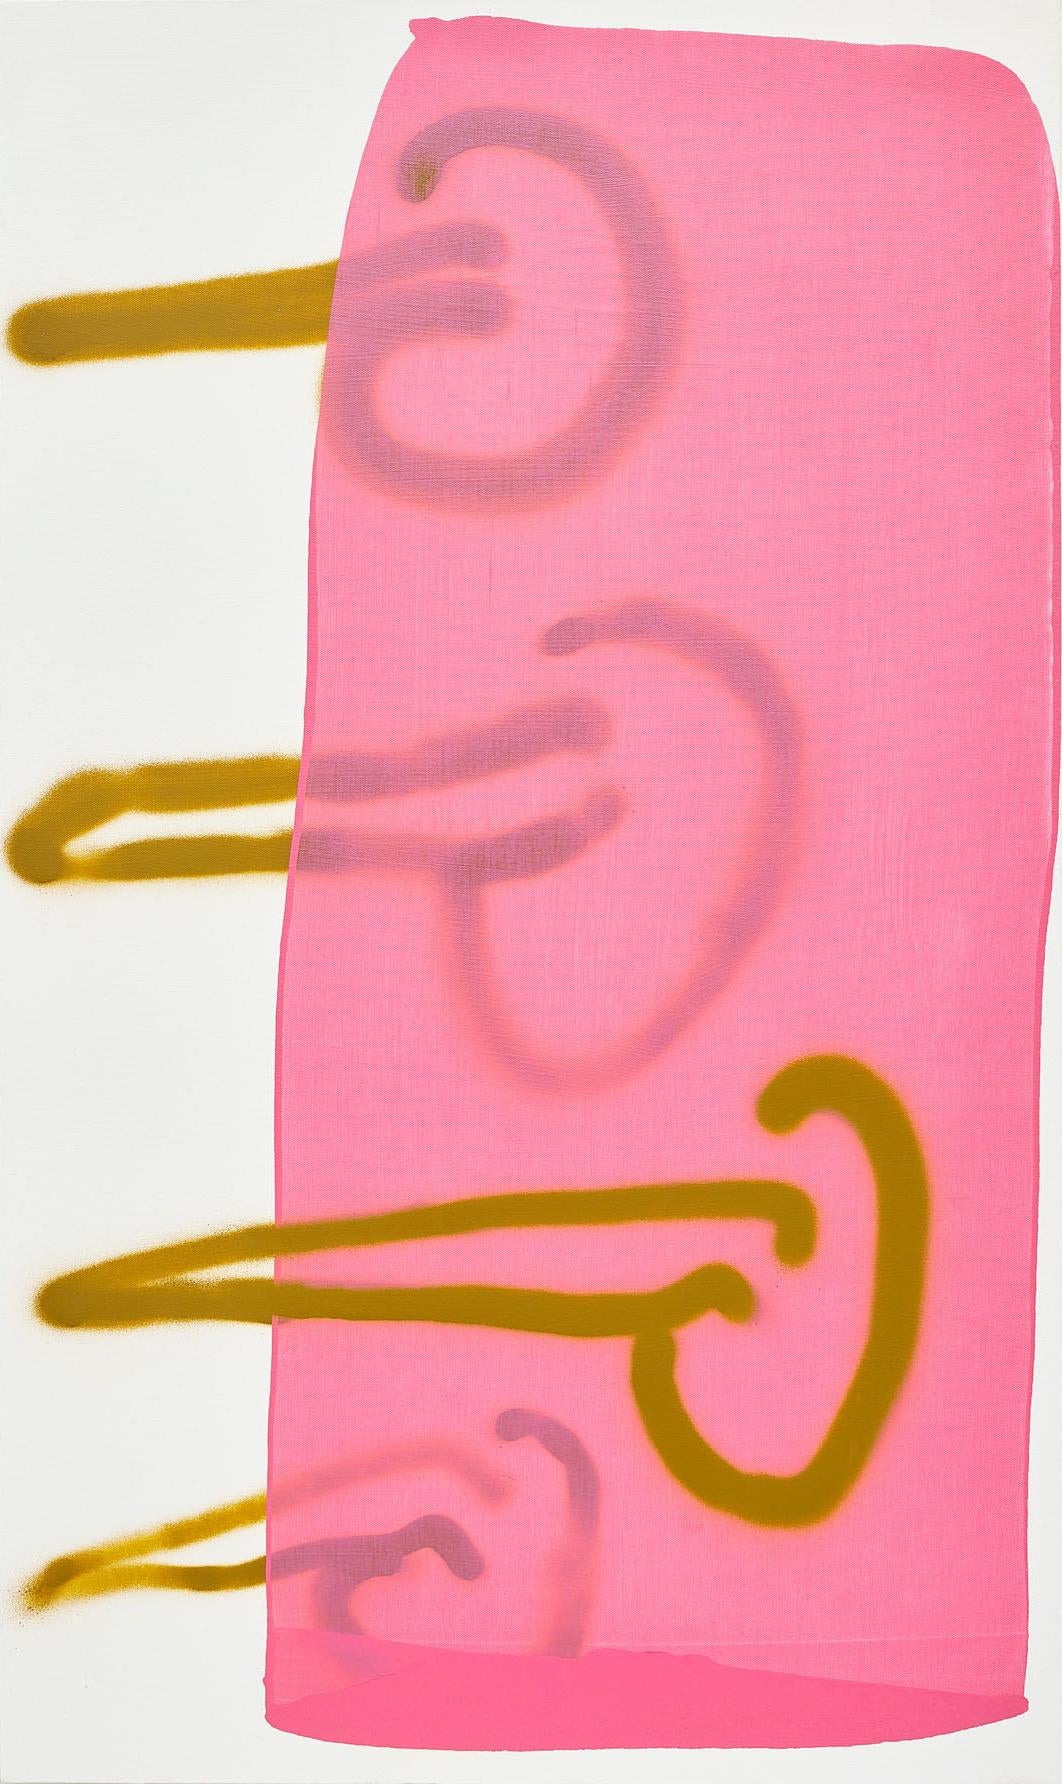 „“Misogyny“, zeitgenössische politische abstrakte Acryl- und Sprühfarbe in Rosa und Ockerfarbe